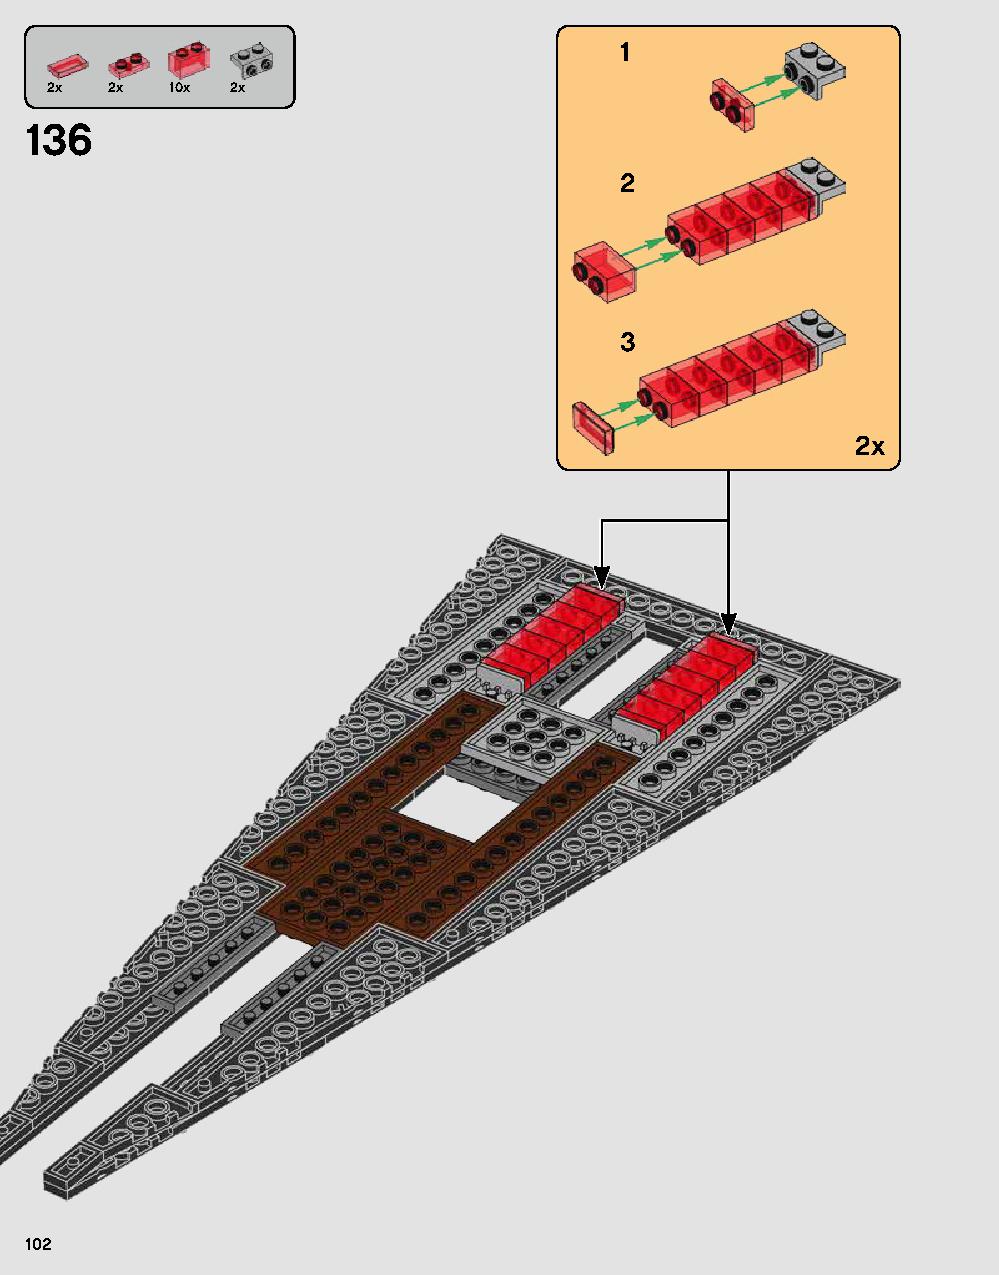 ダース・ベイダーの城 75251 レゴの商品情報 レゴの説明書・組立方法 102 page